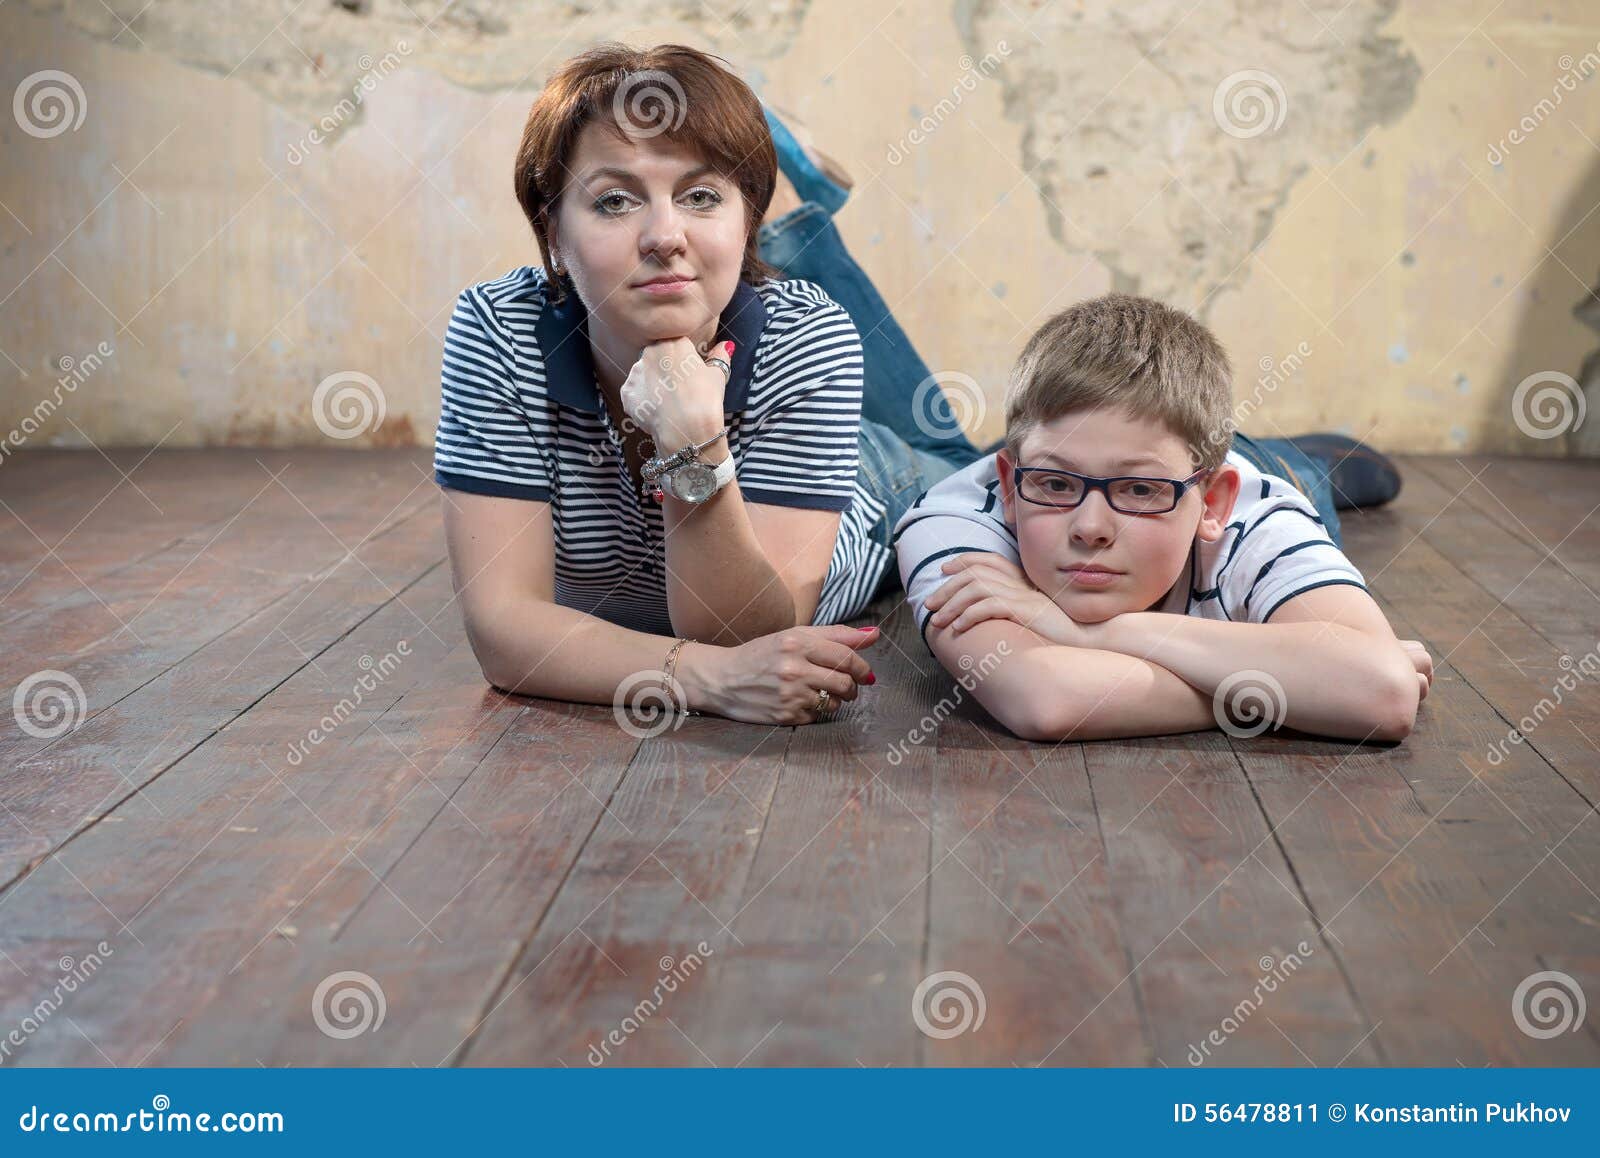 Мамка малолетним. Подросток мальчик с мамой. Молодая женщина с сыном-подростком. Несовершеннолетний сын и мать.